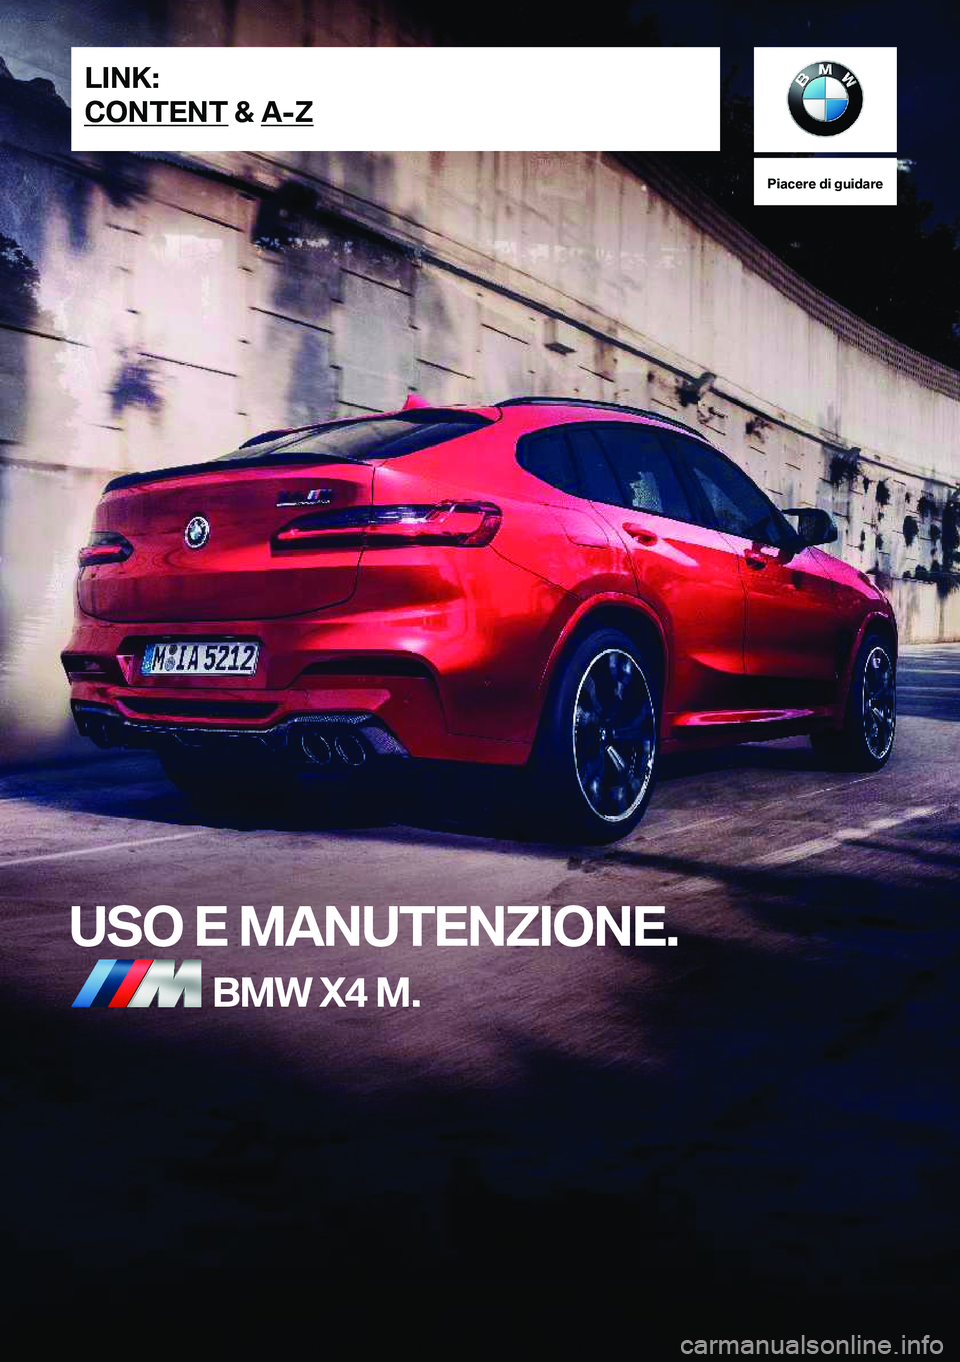 BMW X4 M 2021  Libretti Di Uso E manutenzione (in Italian) �P�i�a�c�e�r�e��d�i��g�u�i�d�a�r�e
�U�S�O��E��M�A�N�U�T�E�N�Z�I�O�N�E�.�B�M�W��X�4��M�.�L�I�N�K�:
�C�O�N�T�E�N�T��&��A�-�Z�O�n�l�i�n�e��E�d�i�t�i�o�n��f�o�r��P�a�r�t��n�o�.��0�1�4�0�5�A�1